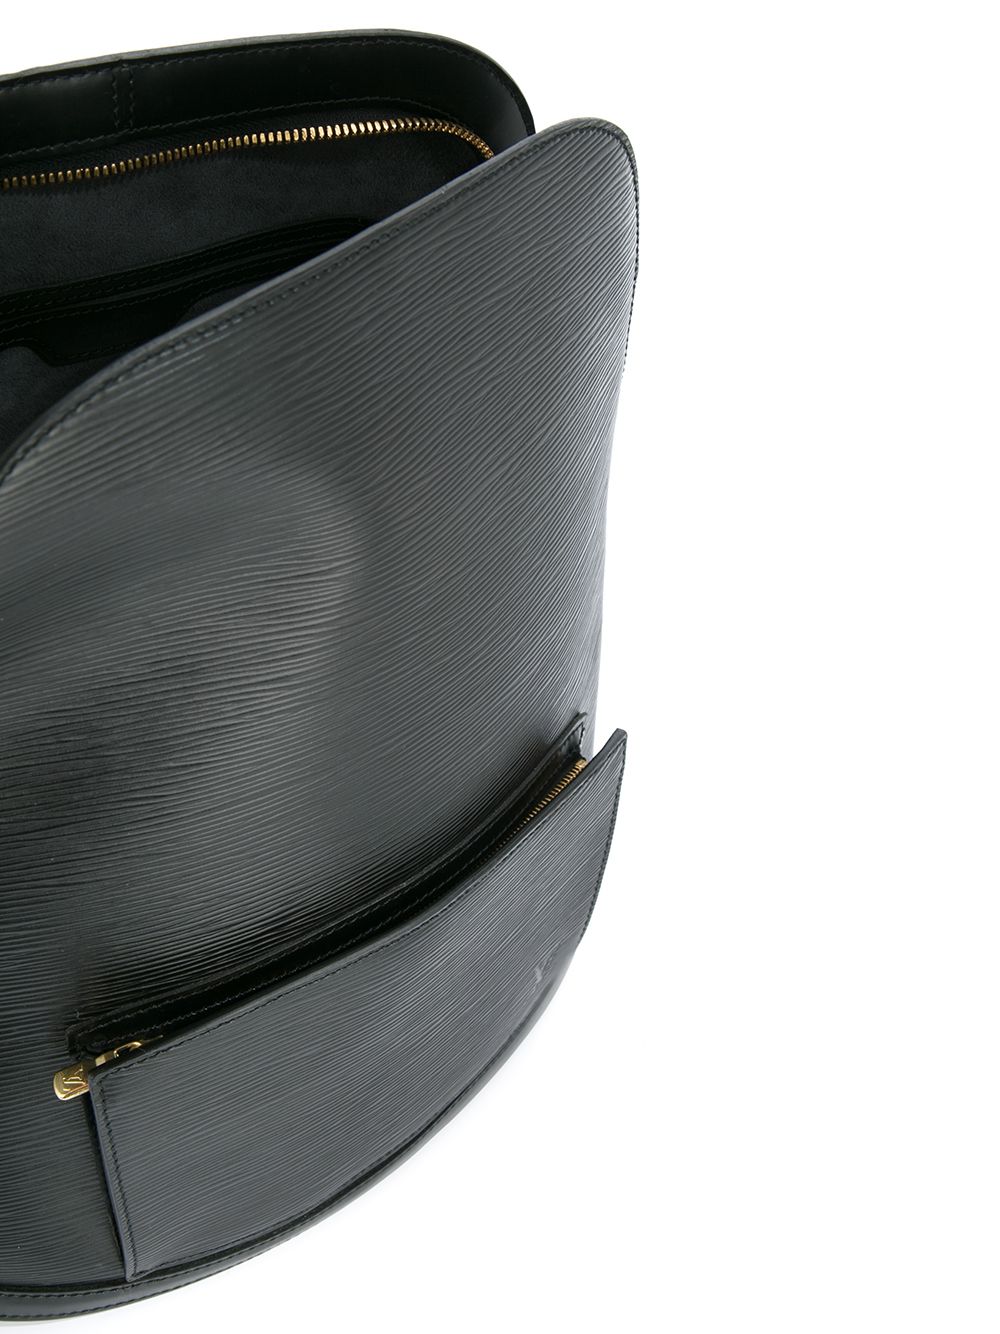 Louis Vuitton Louis Vuitton Gobelins Black Epi Leather Large Backpack